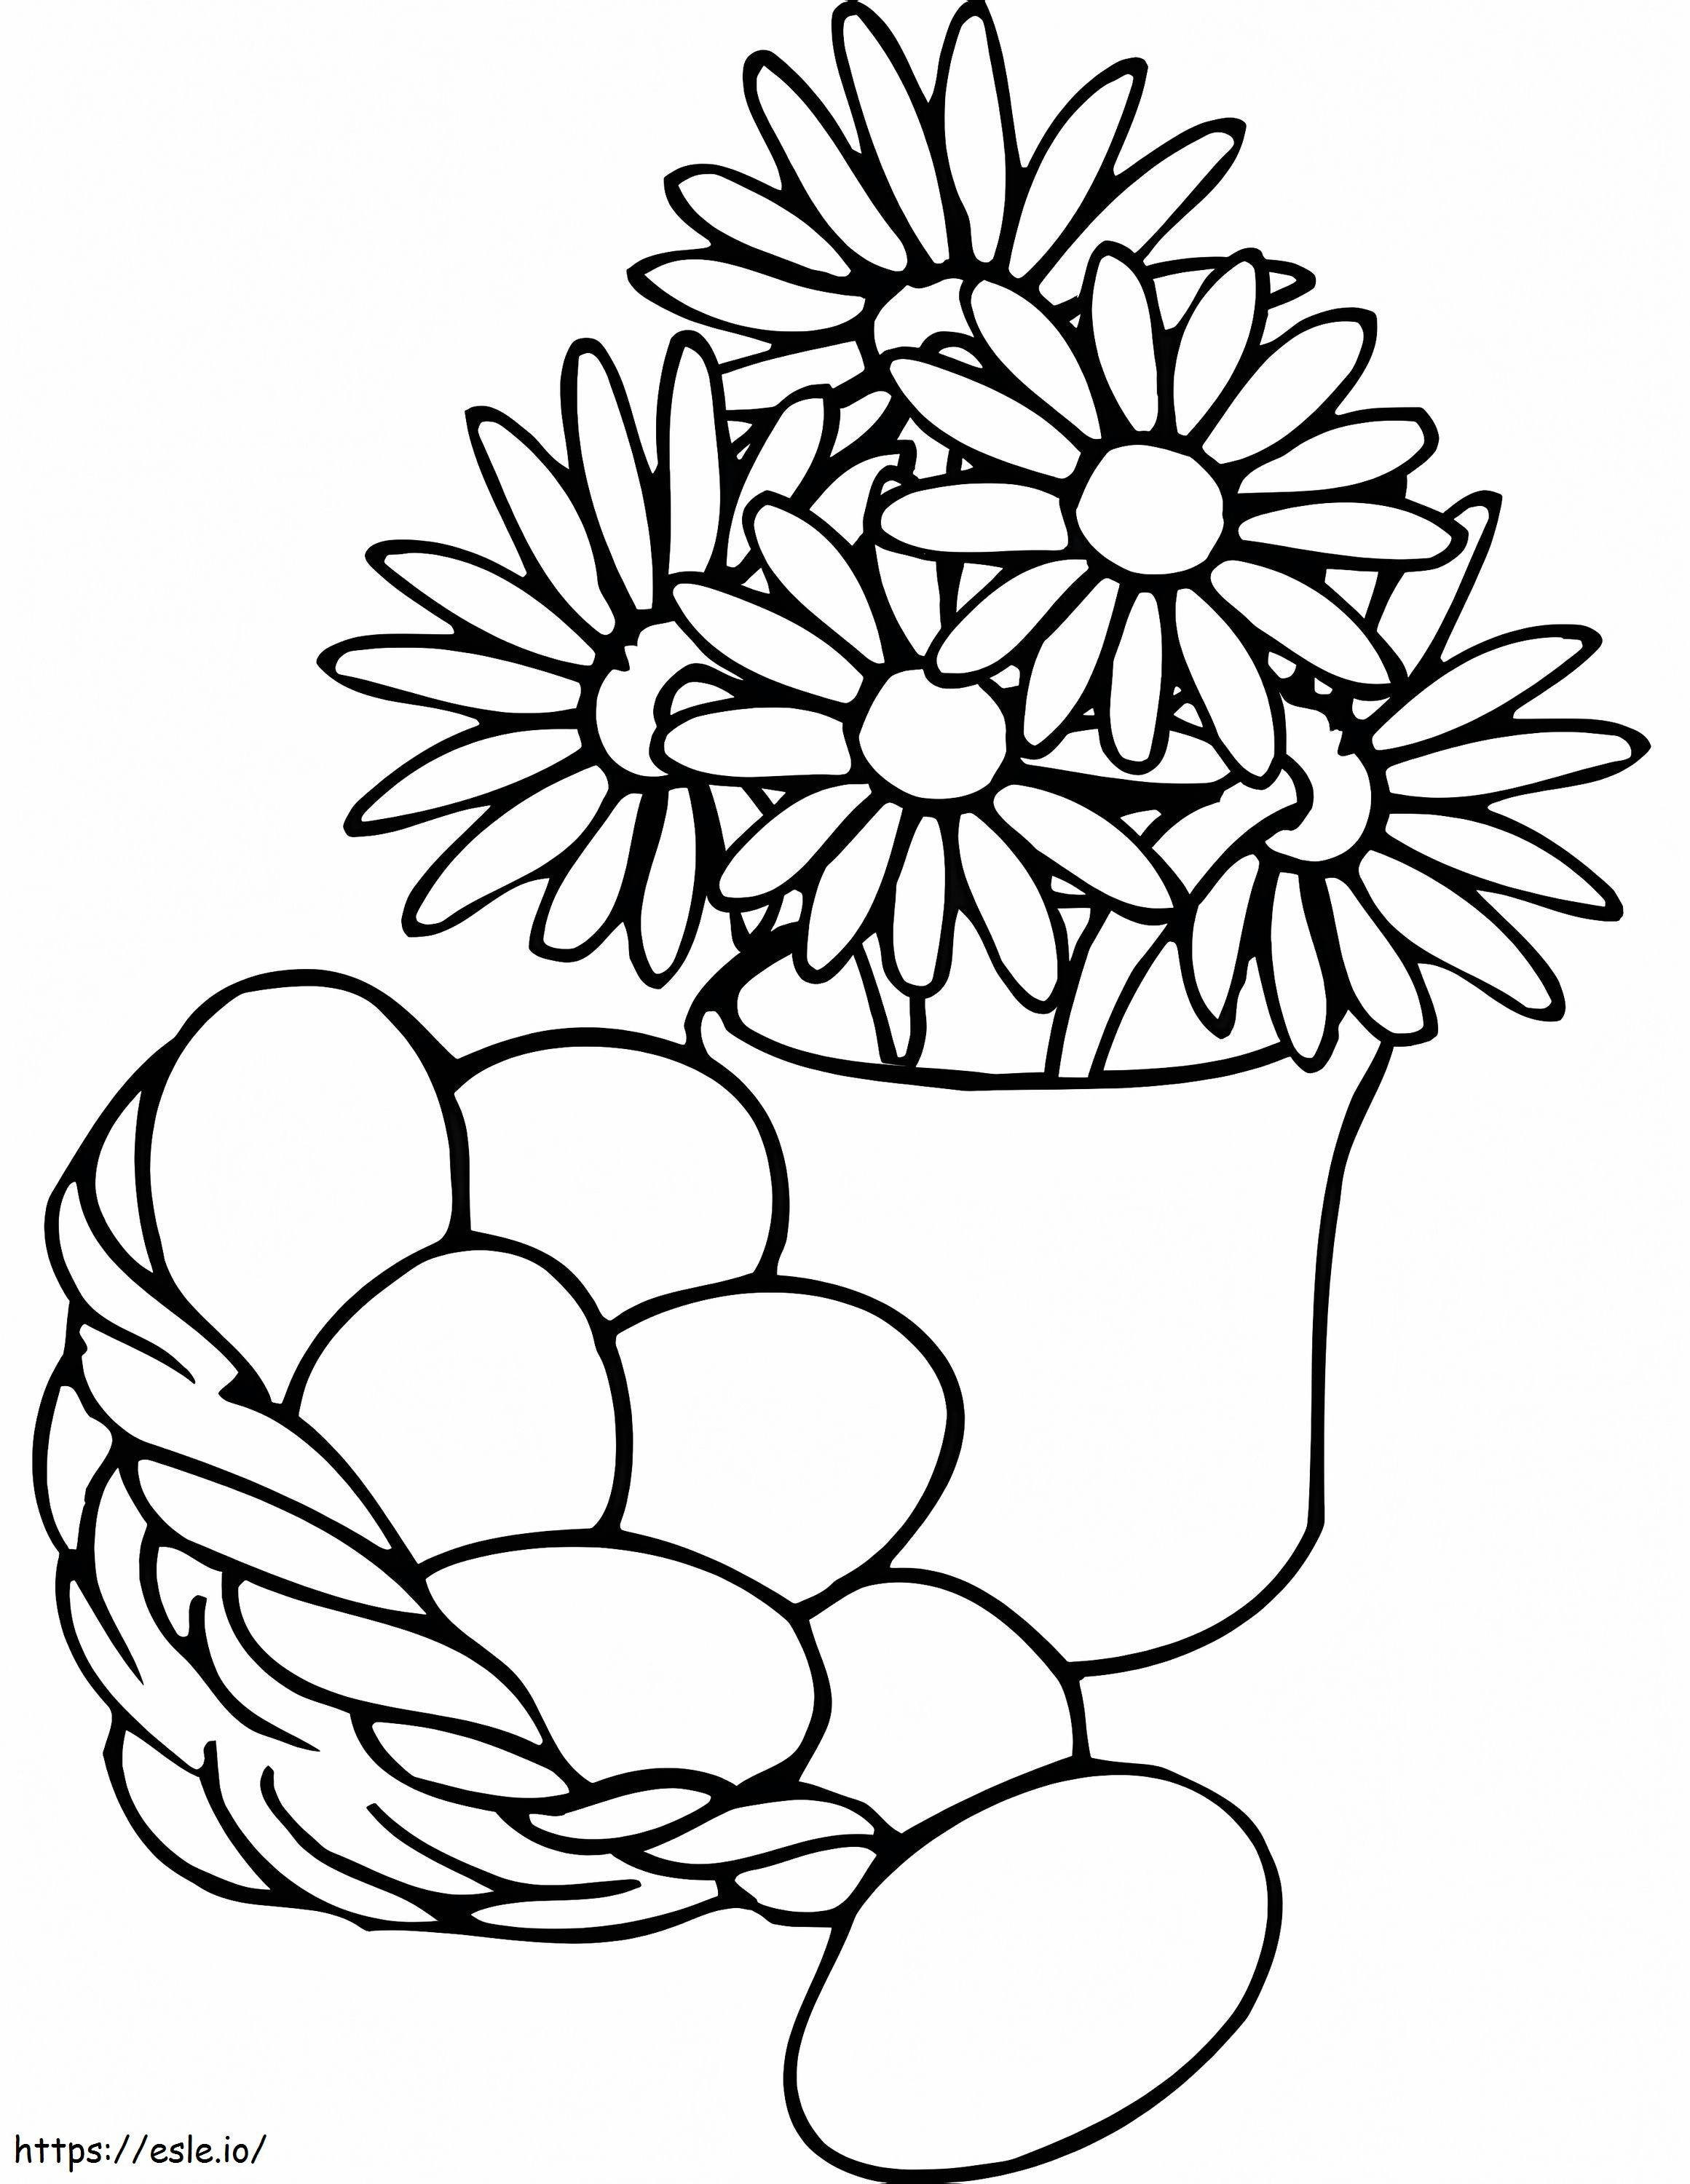 Osterkorb und Blumenvase ausmalbilder